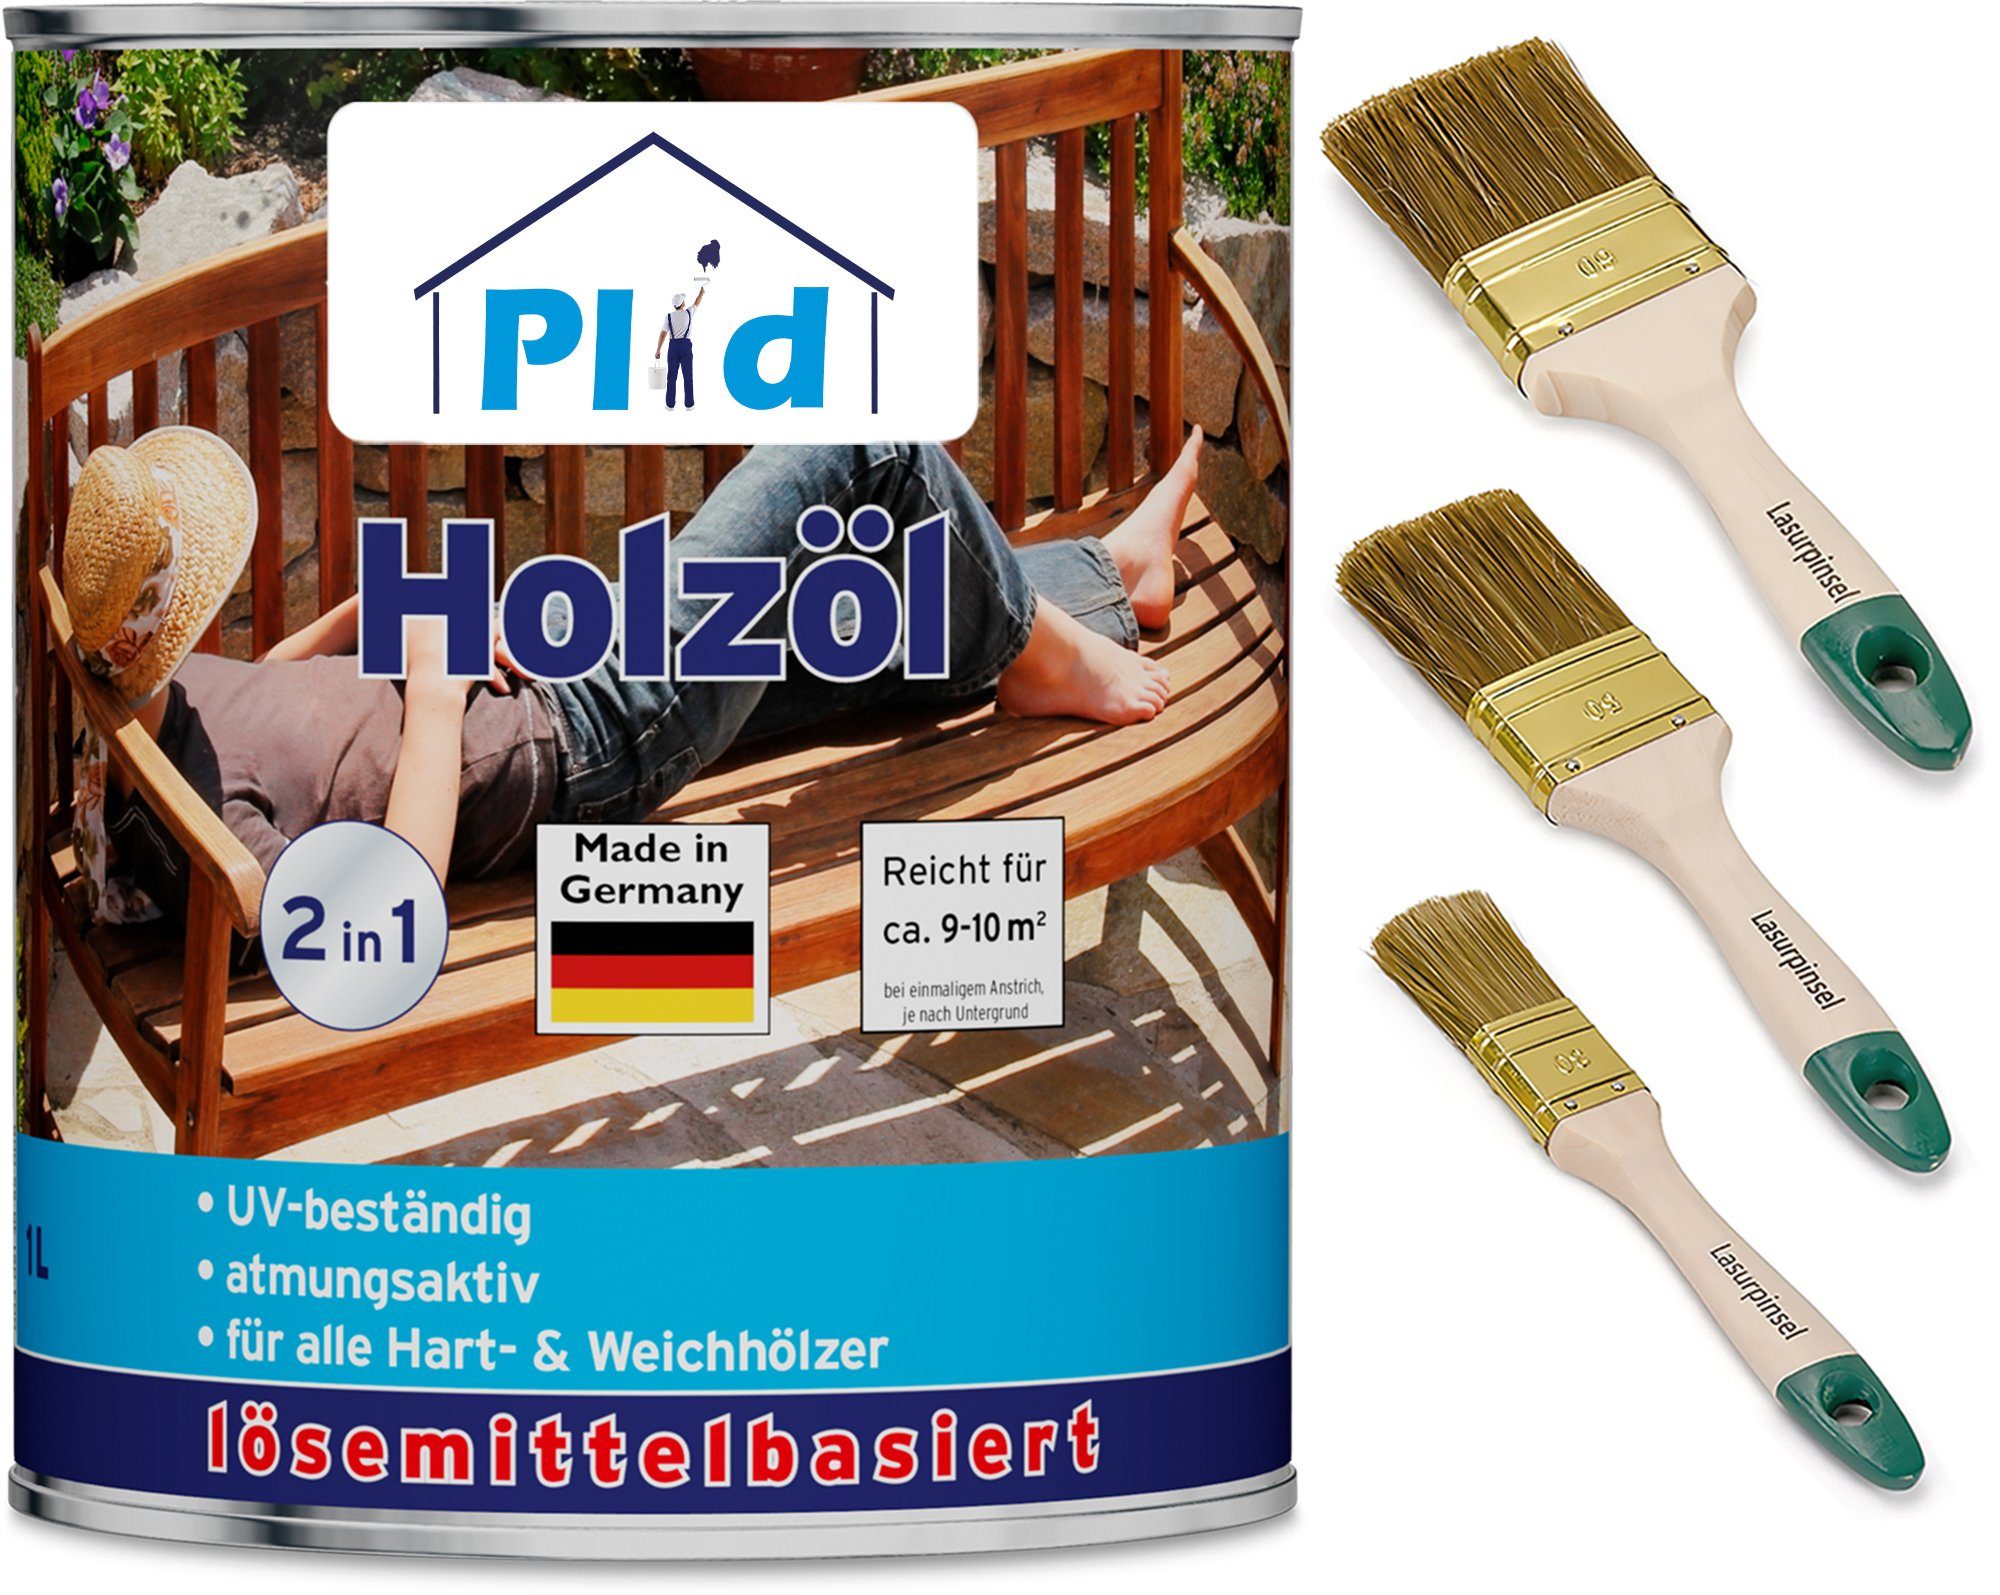 Pflegeöl Holzschutz Teak Premium Holzöl plid Holzöl Imprägnieröl Pinsel